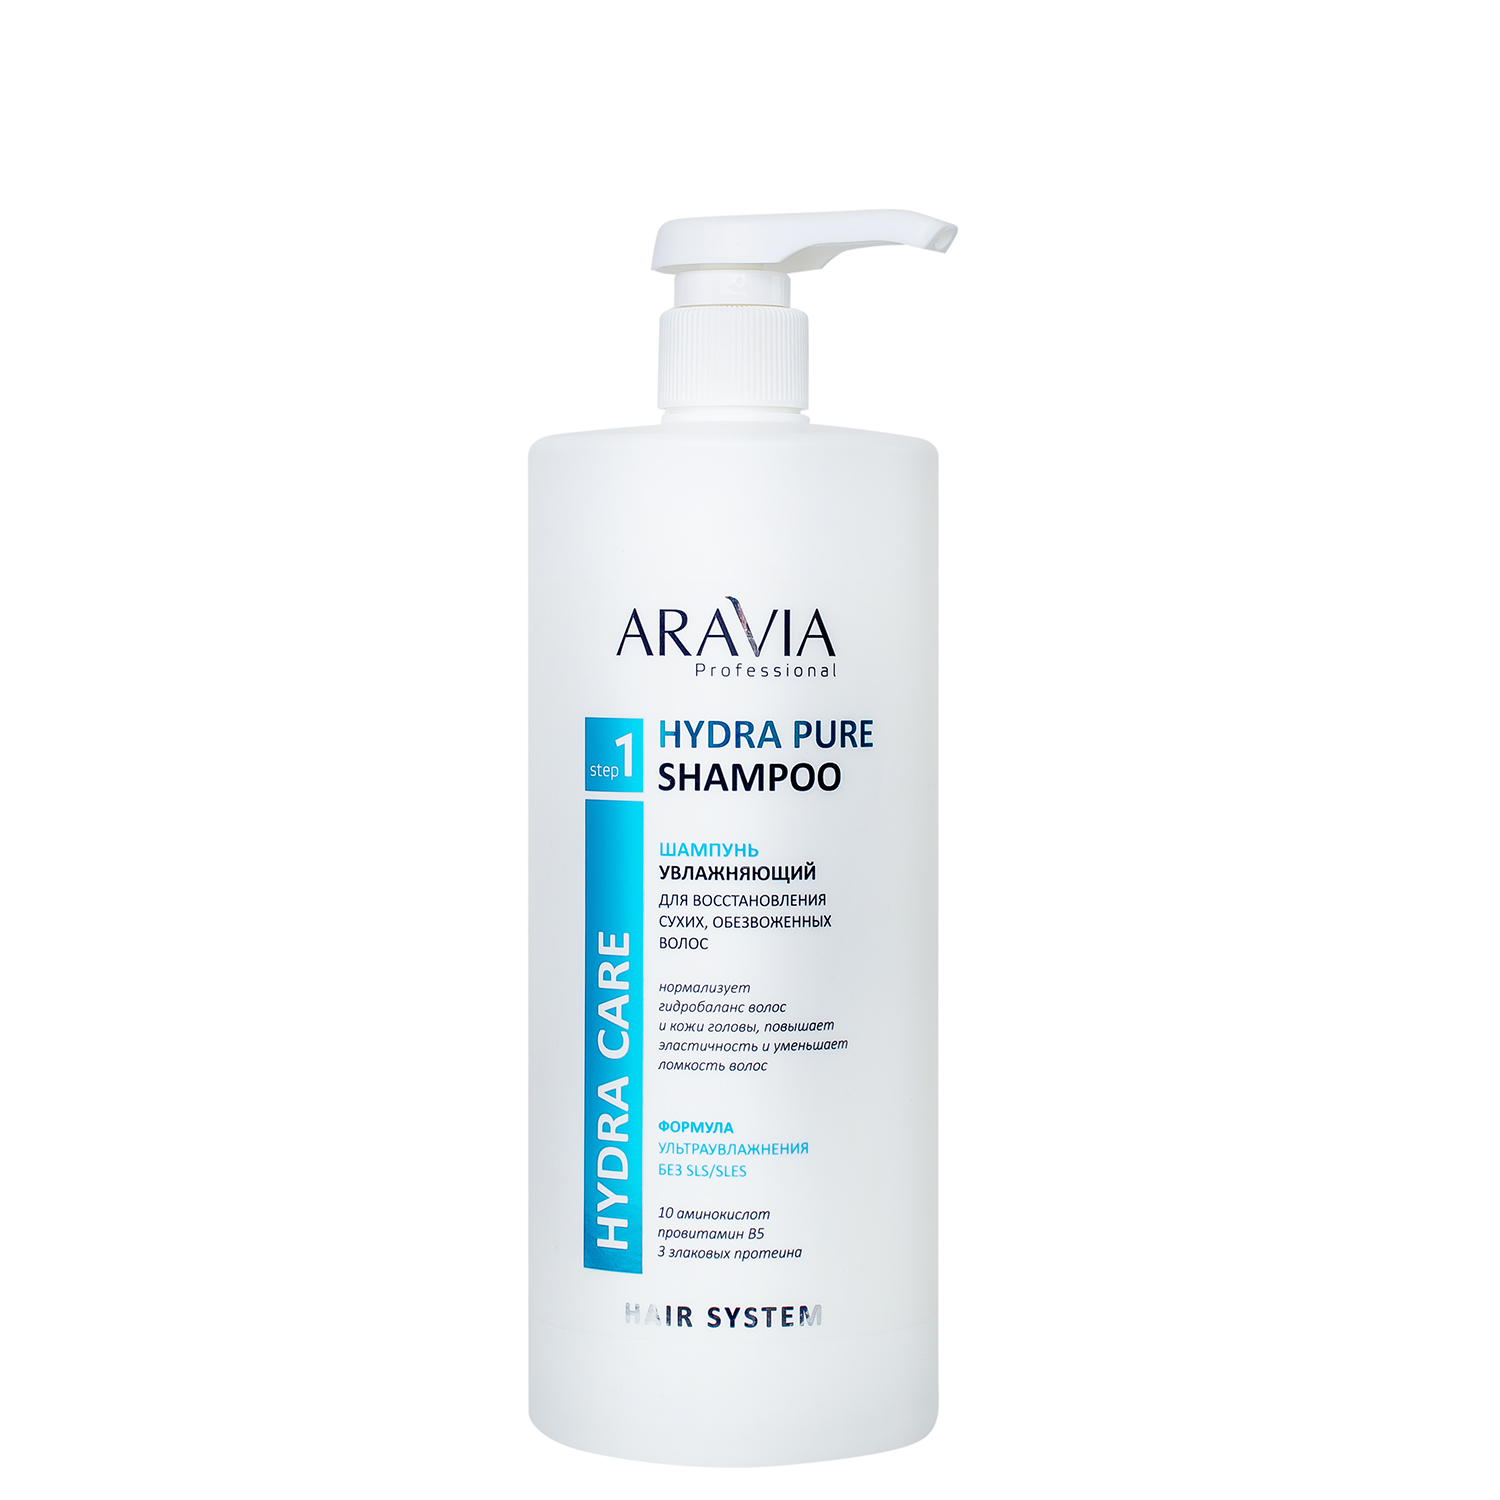 Шампунь увлажняющий для восстановления сухих, обезвоженных волос Hydra Pure Shampoo, 1000 мл, ARAVIA Professional